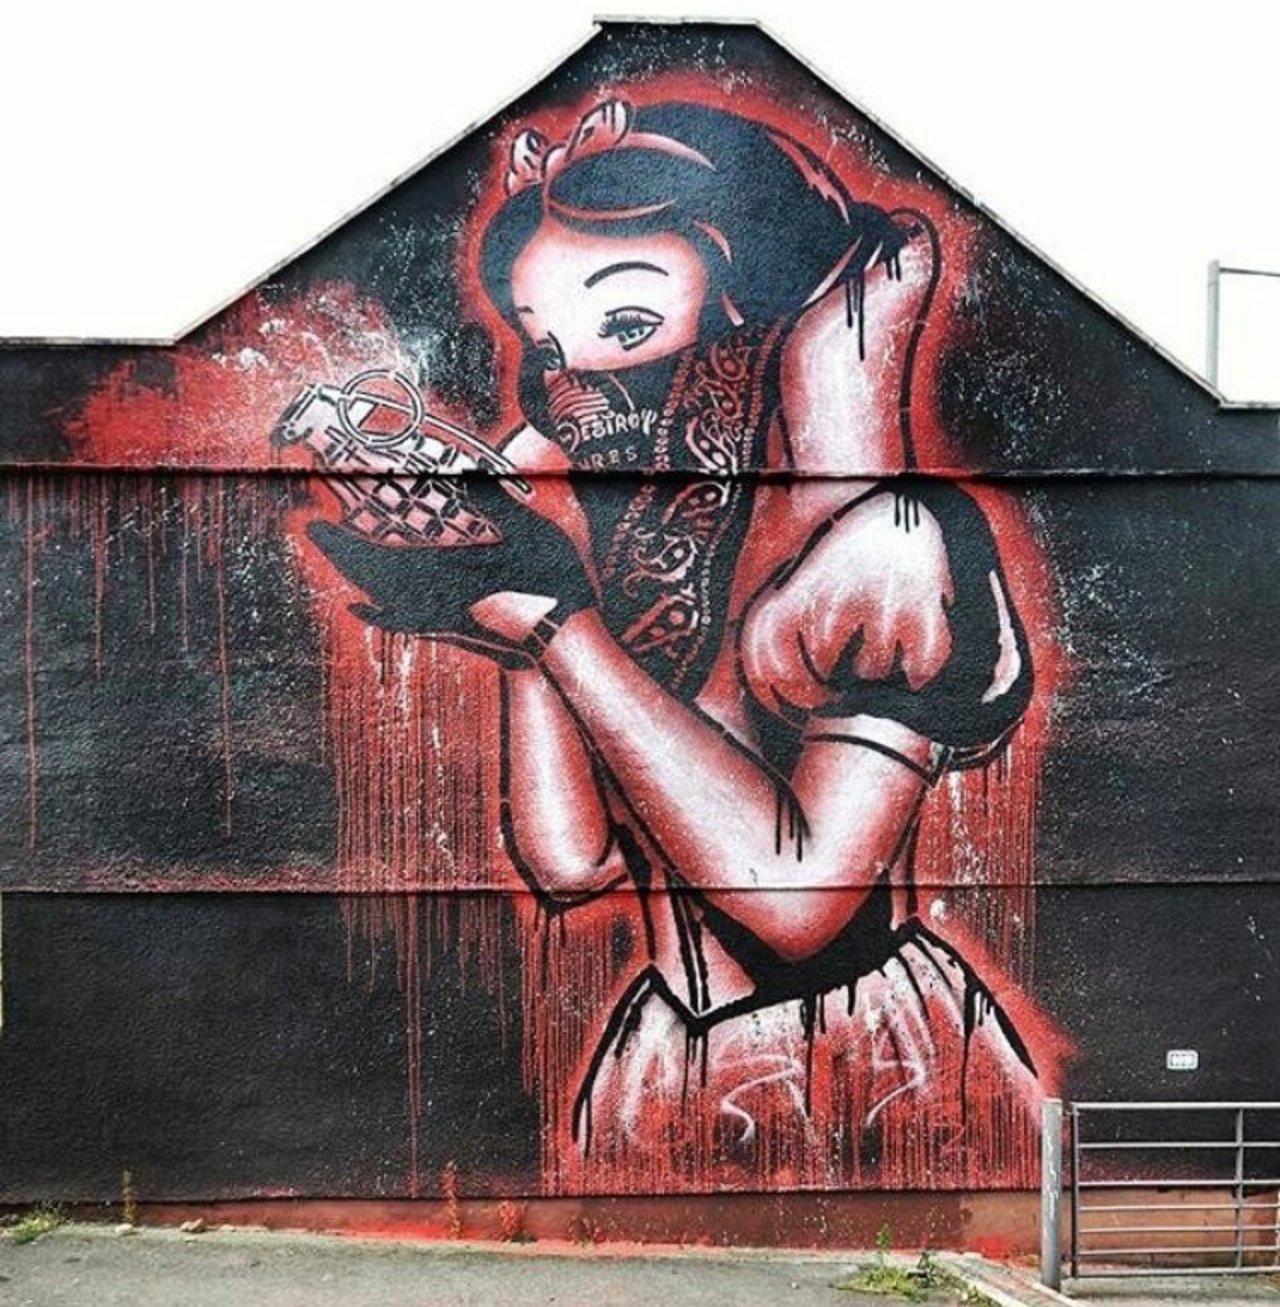 RT GoogleStreetArt: New Street Art by Goin goinart for Bristol Upfest Upfest #art #graffiti #mural #streetart https://t.co/5ATiqXkleh